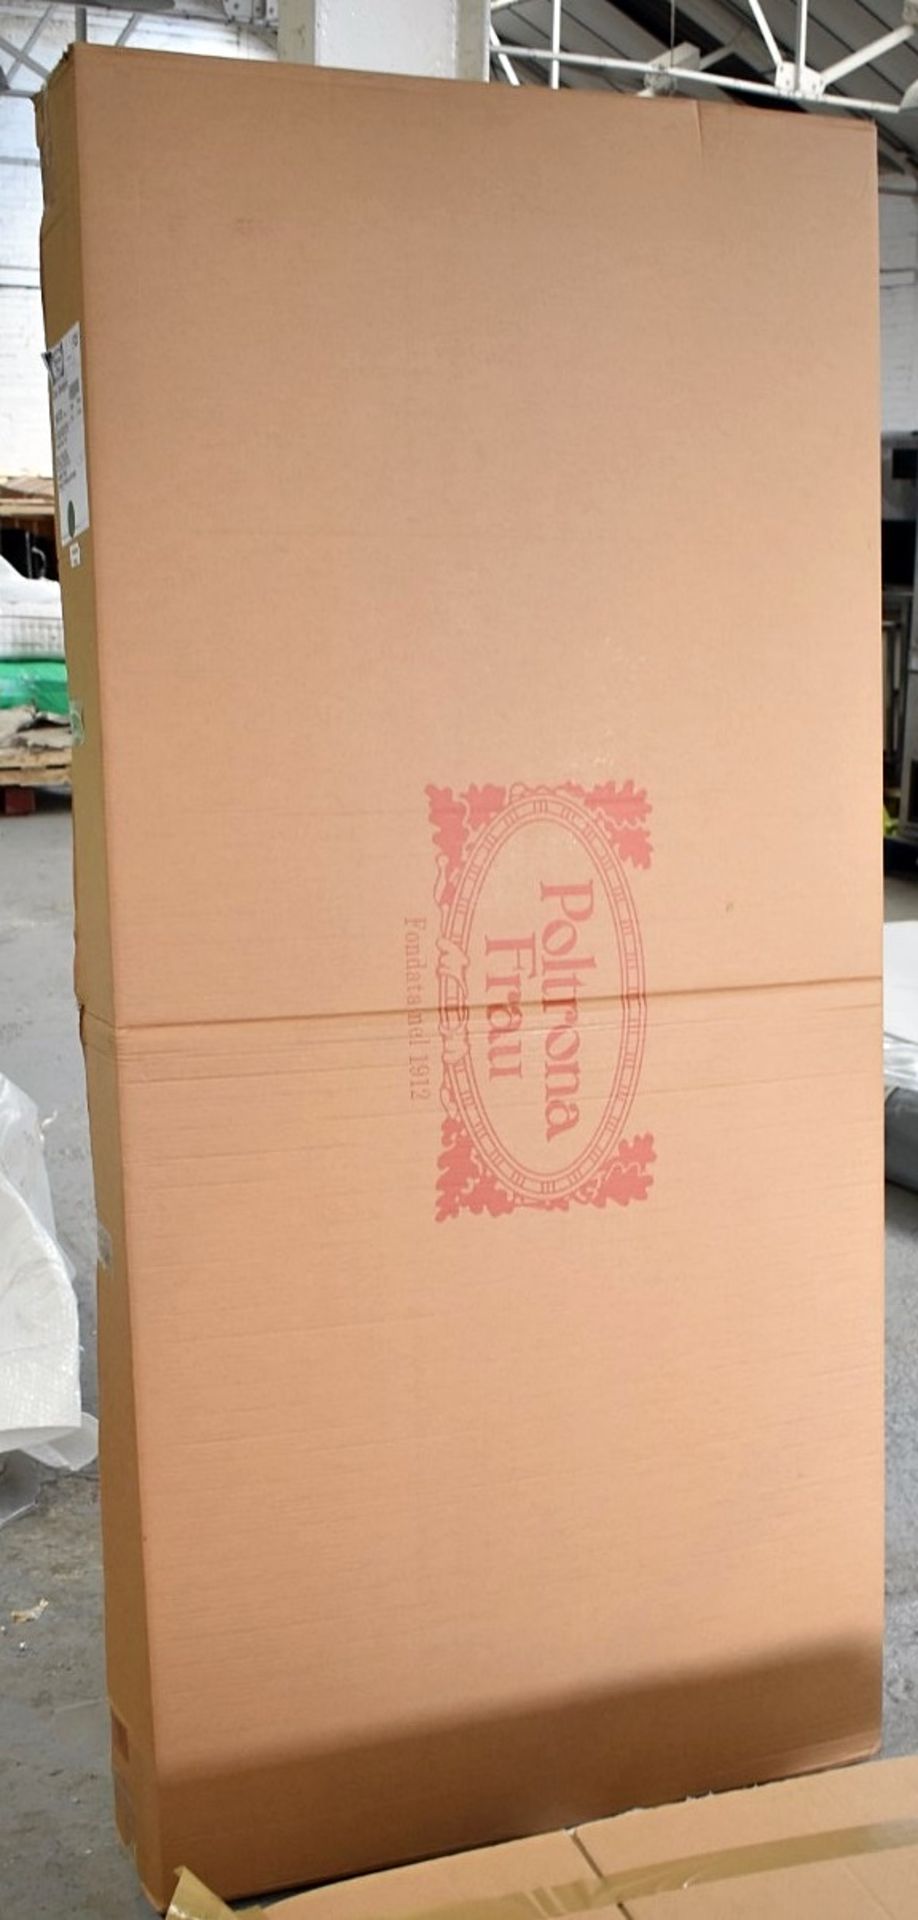 1 x POLTRONA FRAU 'Vespero' Luxury Super Kingsize Bed Base Slats - Boxed Stock - RRP £956.00 - Image 4 of 6